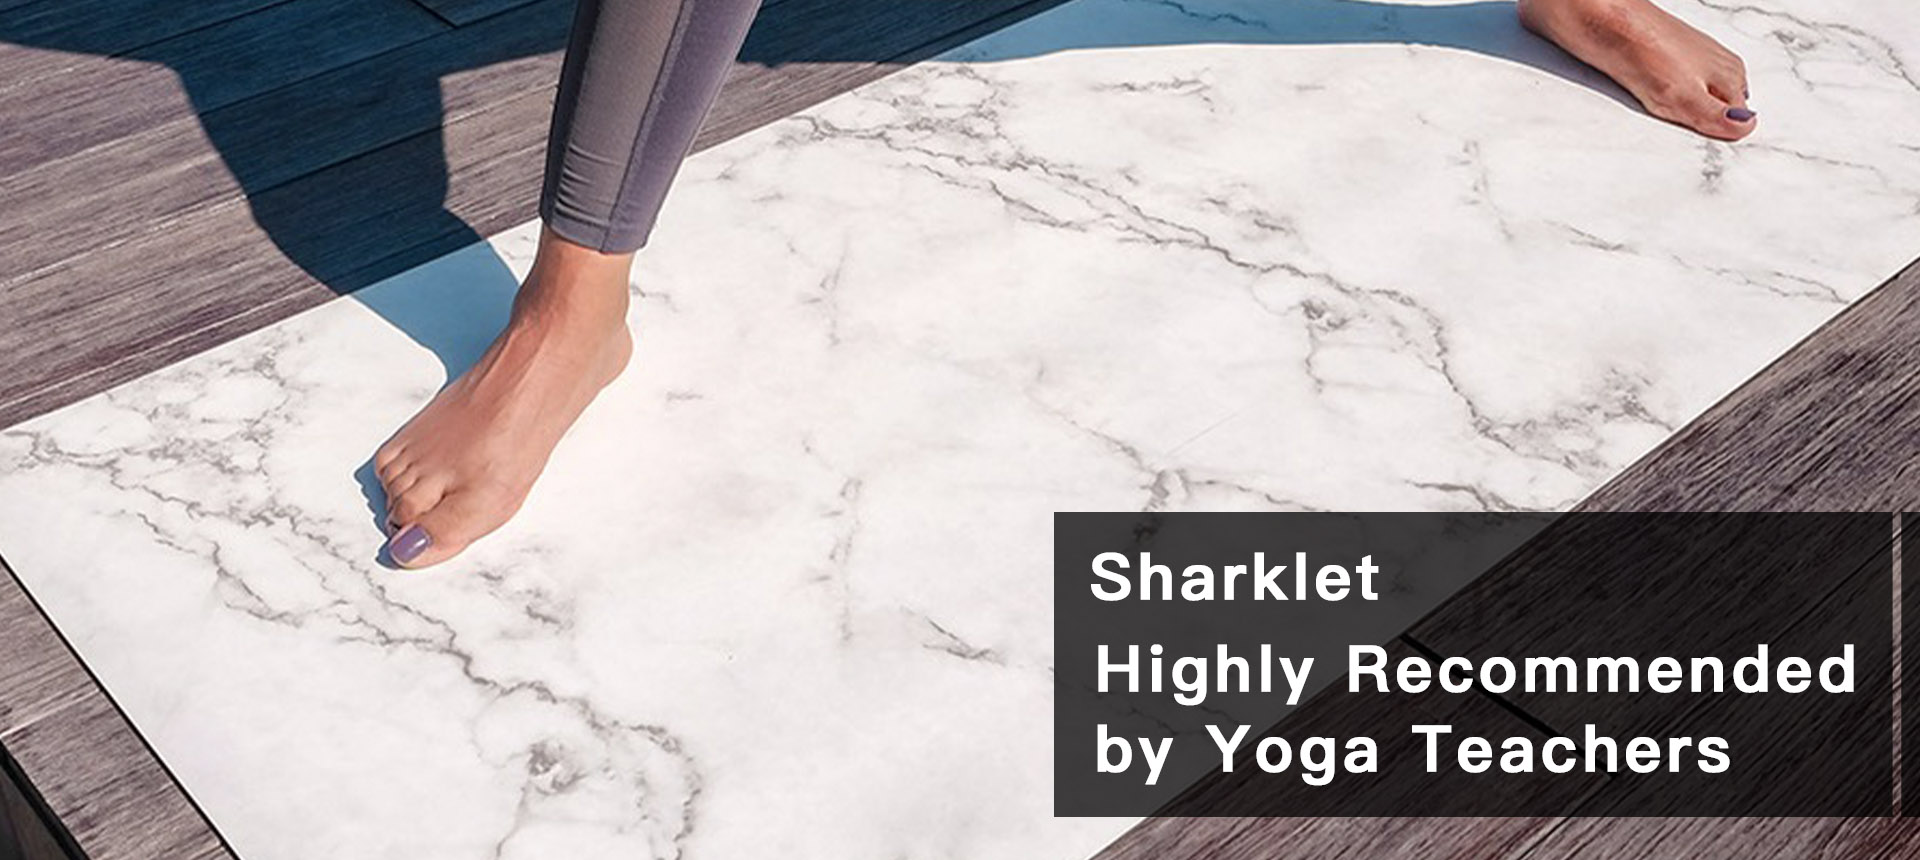 Sharklet Yoga mat